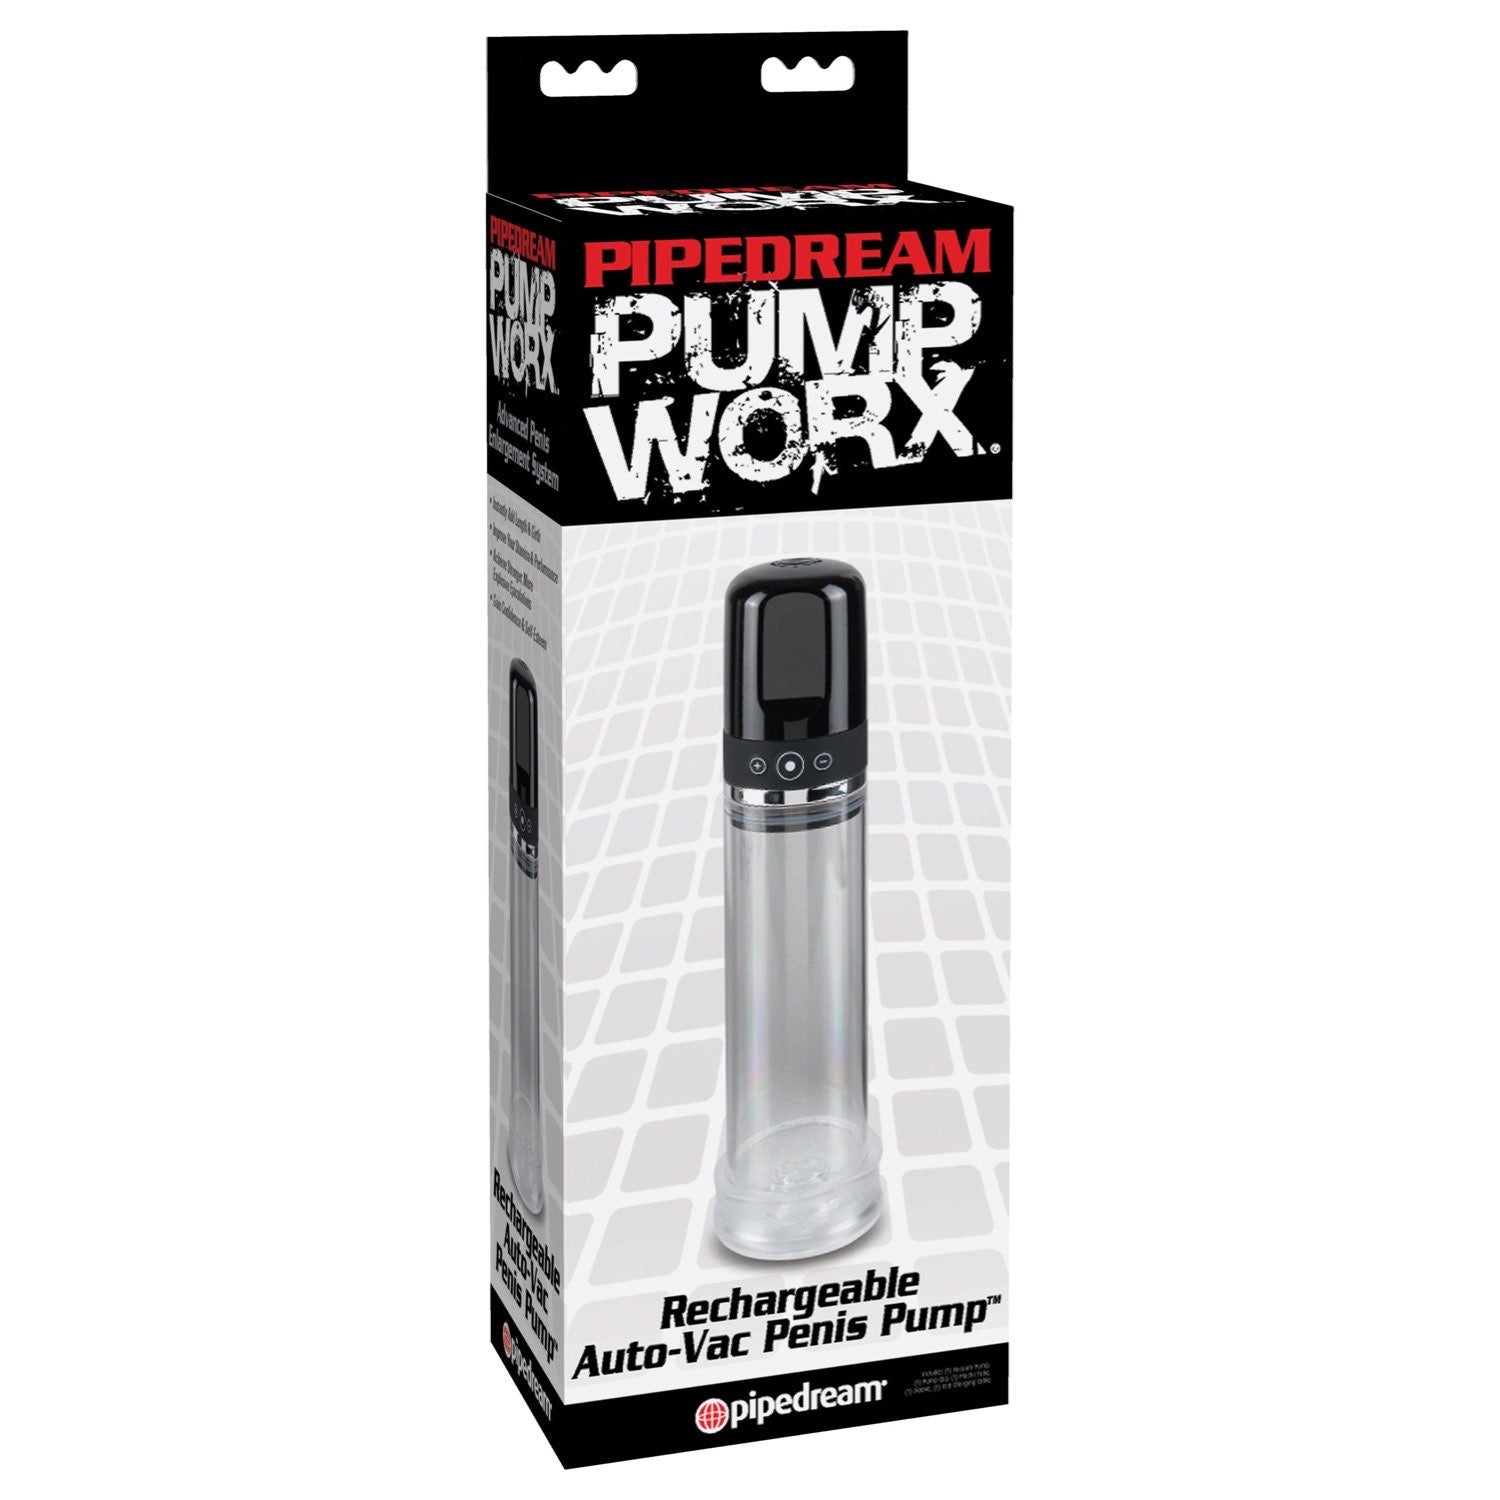 泵沃克斯 可充电自动真空阴茎泵 - 透明可充电阴茎泵 by Pipedream